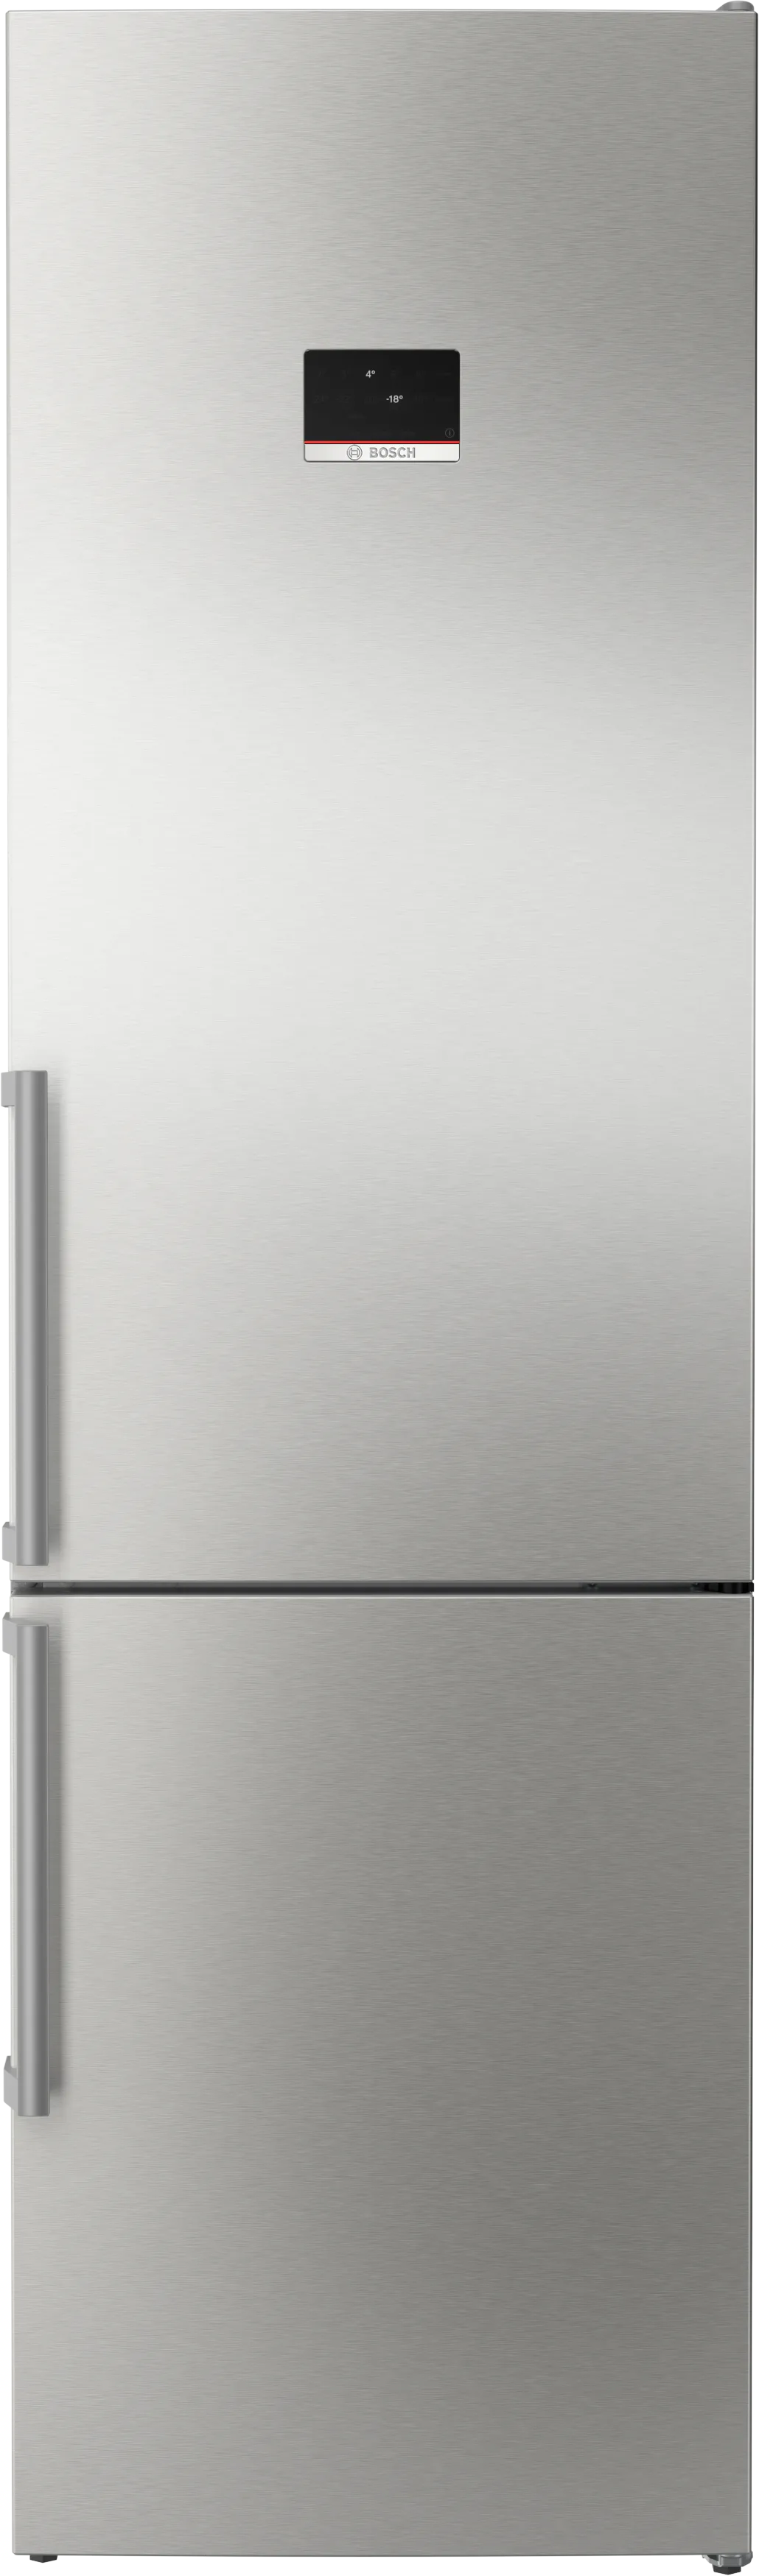 Serija 4 Laisvai statomas šaldytuvas-šaldiklis su šaldiklio skyriumi apačioje 203 x 60 cm Šlifuotas plienas, atsparus pirštų atspaudams 